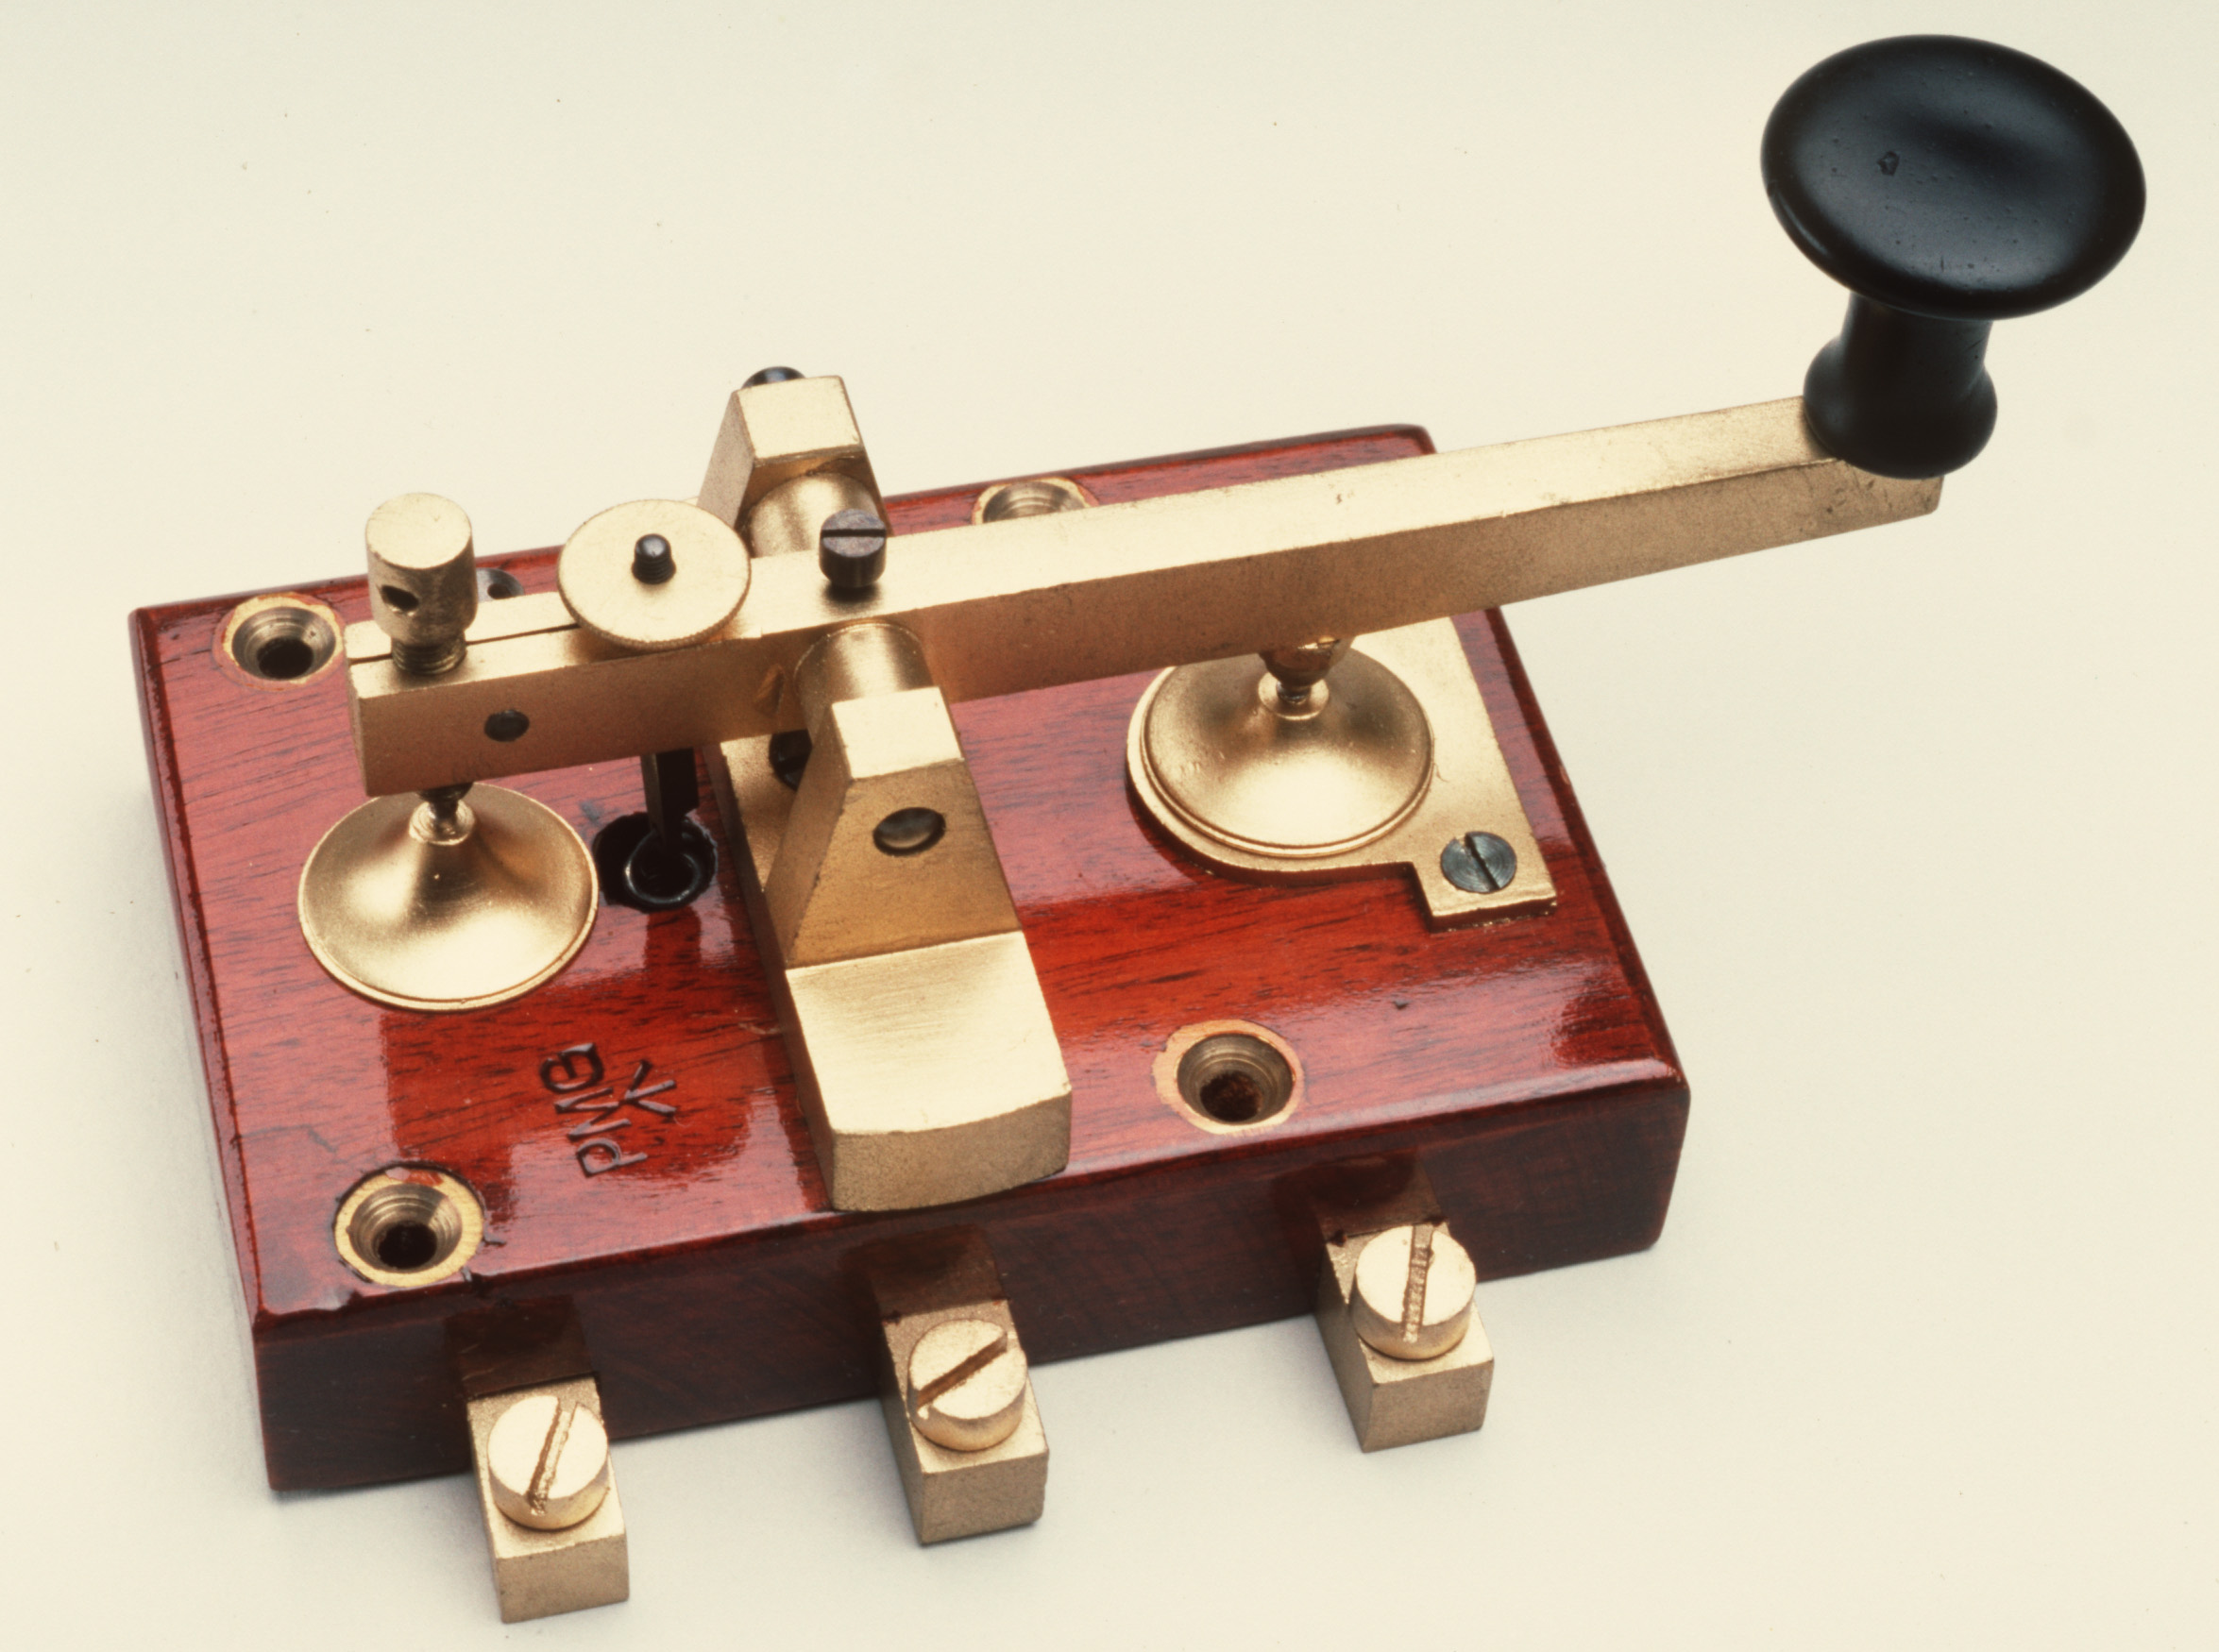 An electric telegraph key